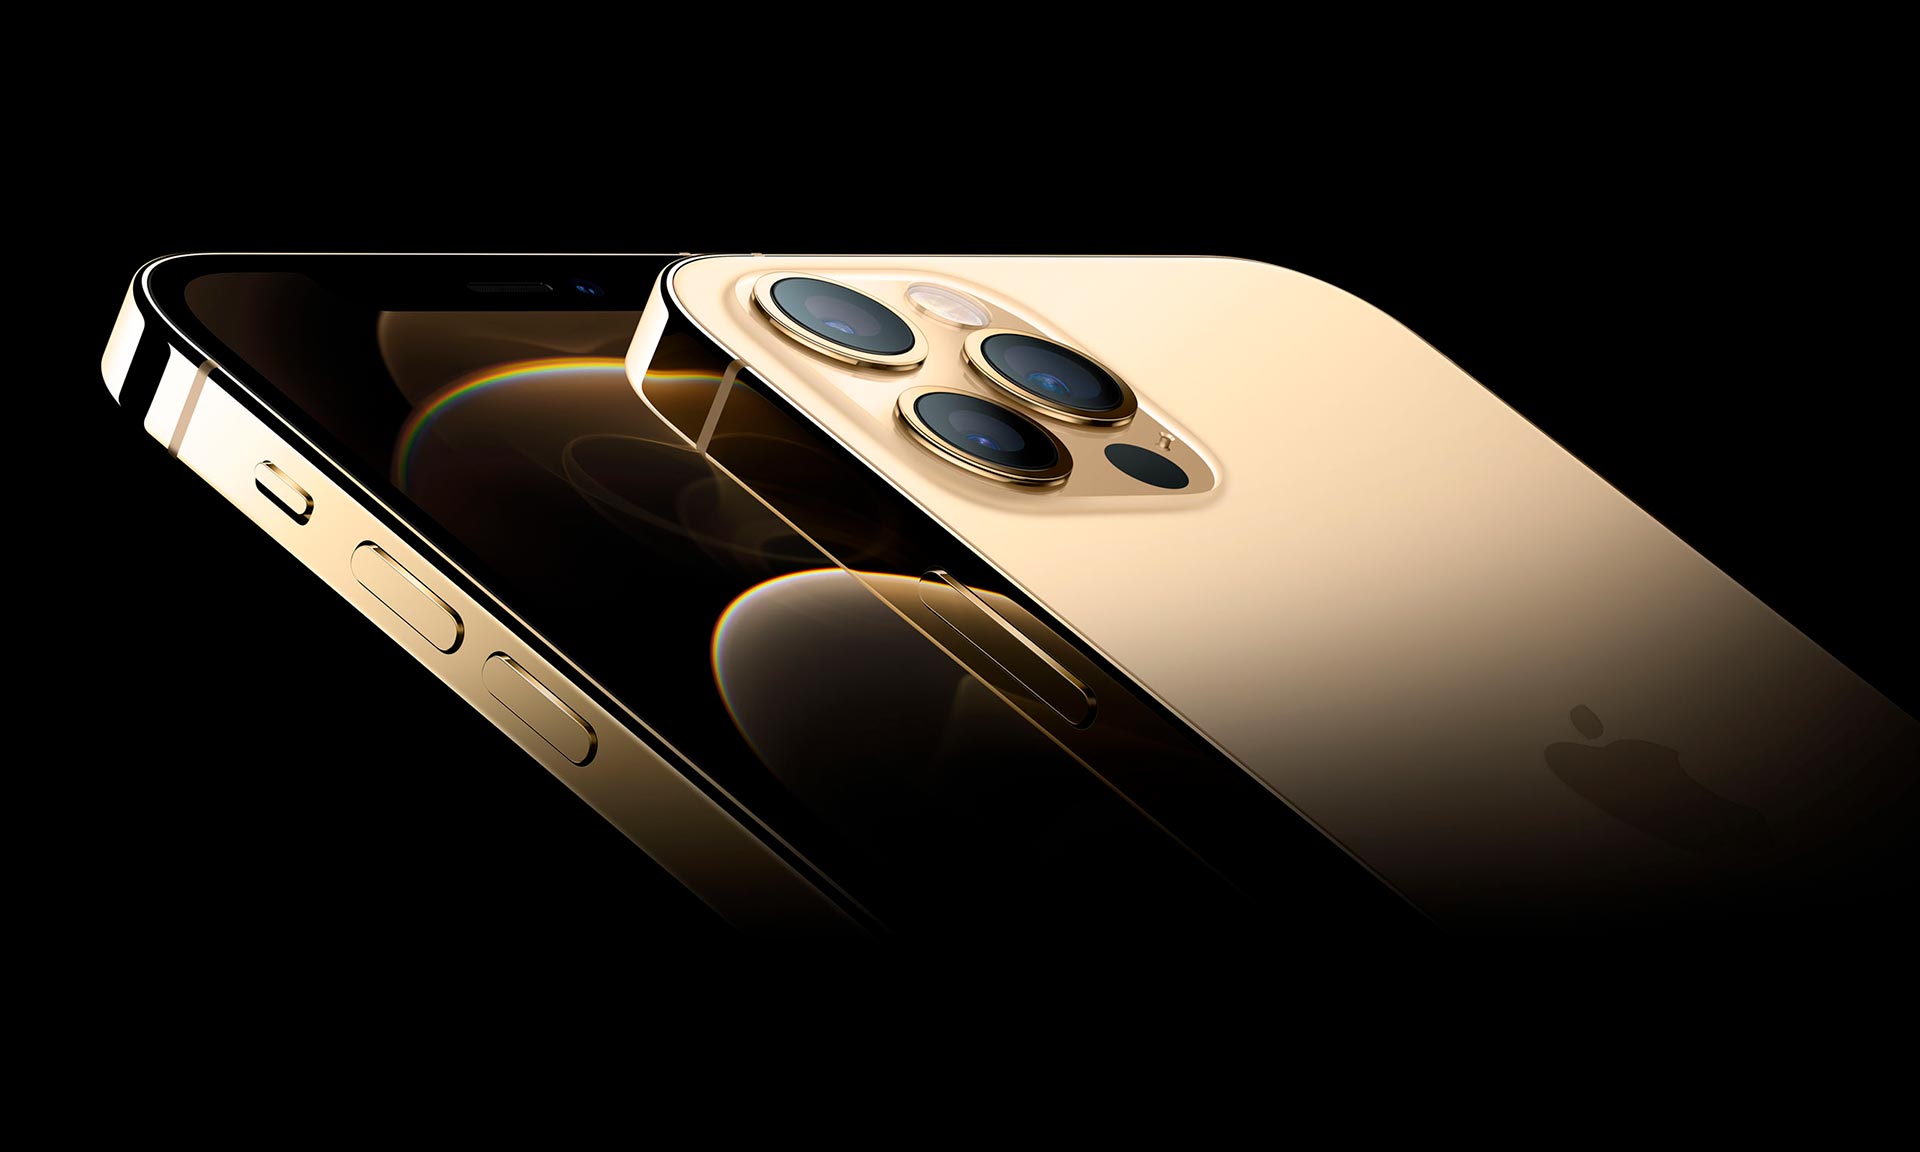 Apple představil čtyři nové mobily iPhone 12 s upraveným designem i řadou inovací